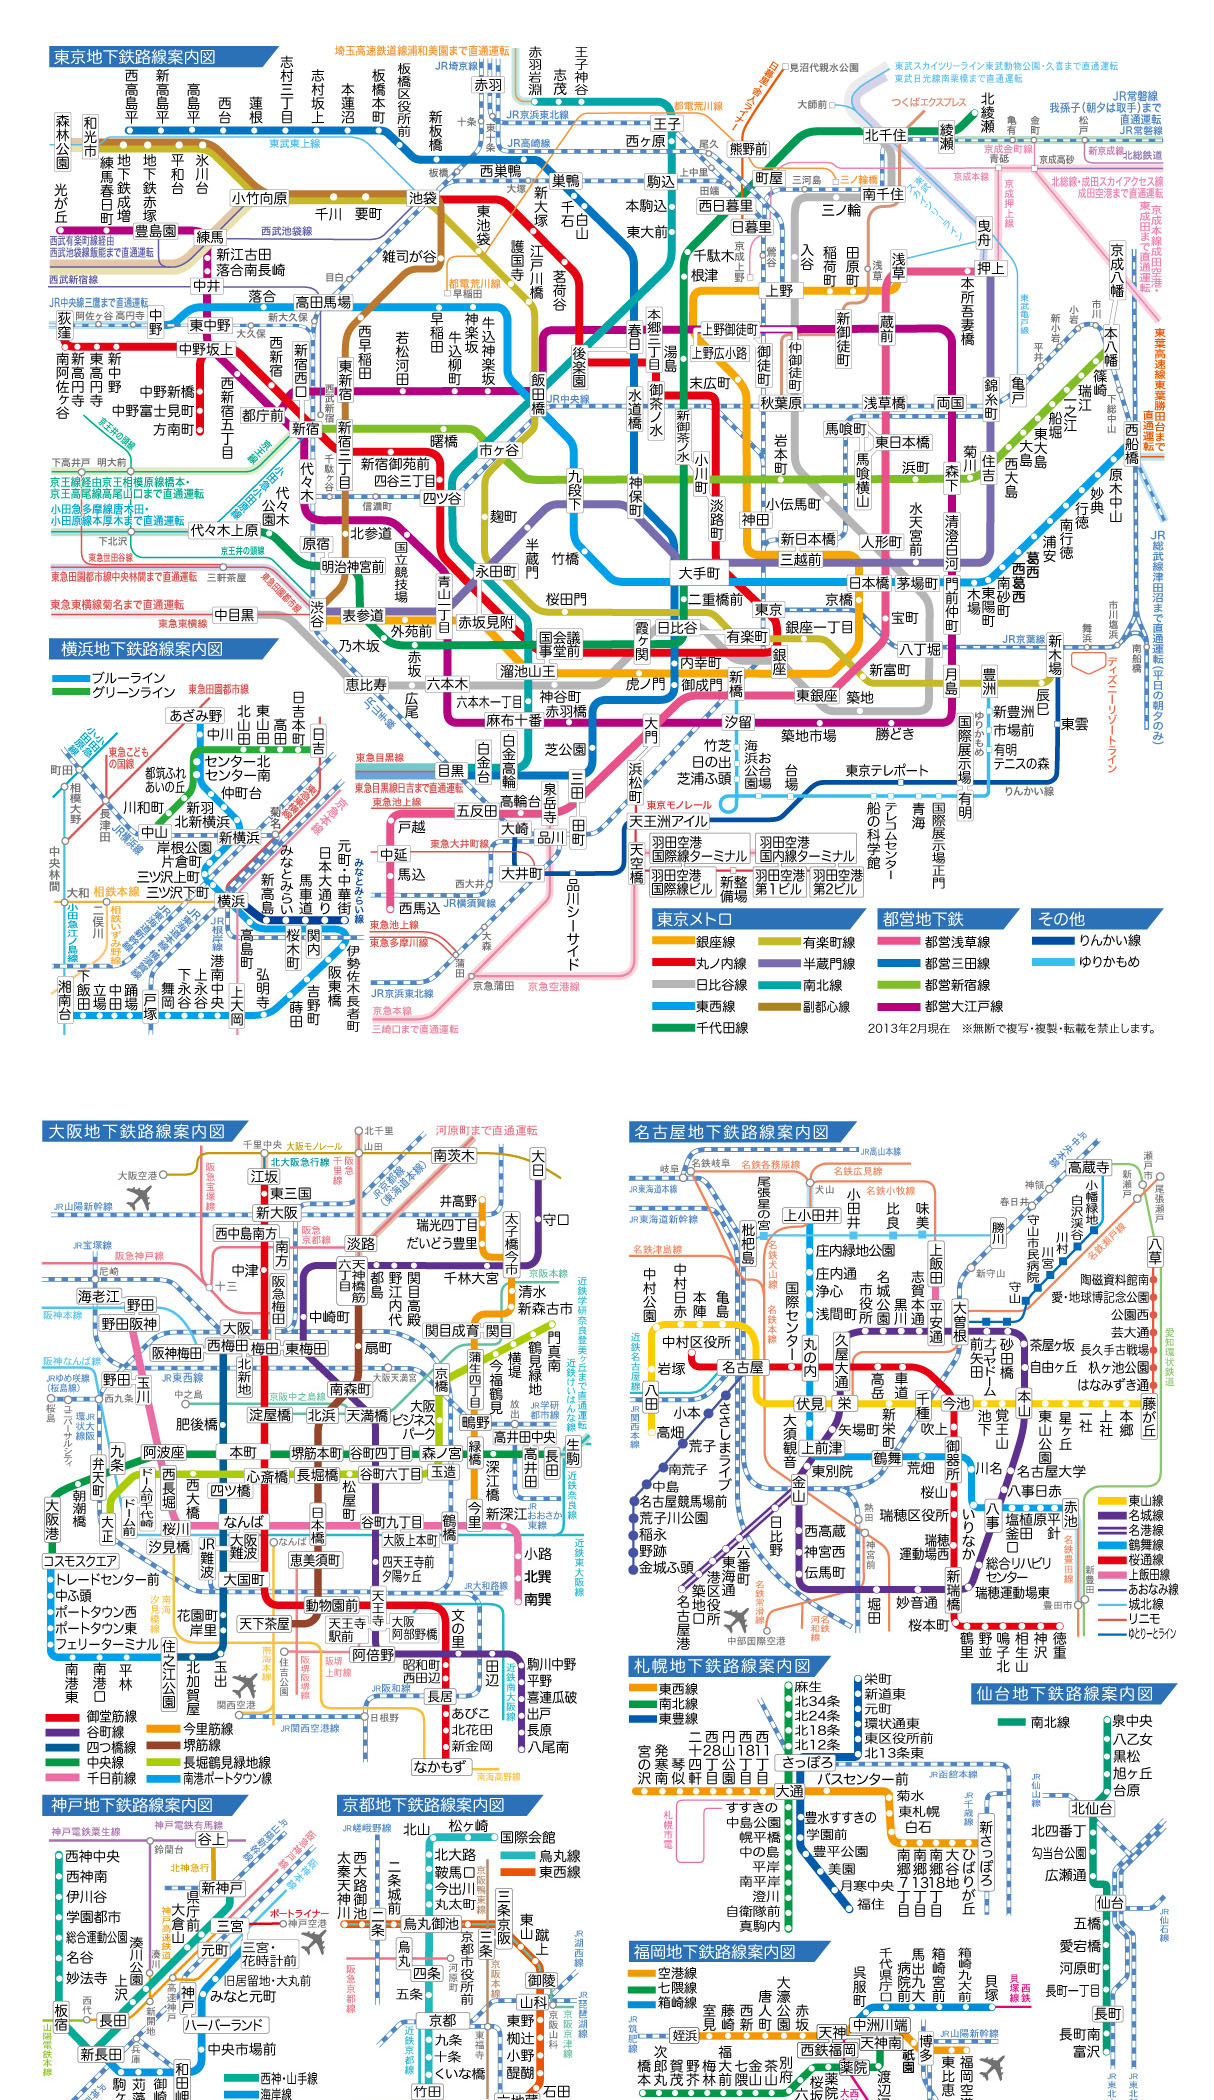 地下鉄路線図セット